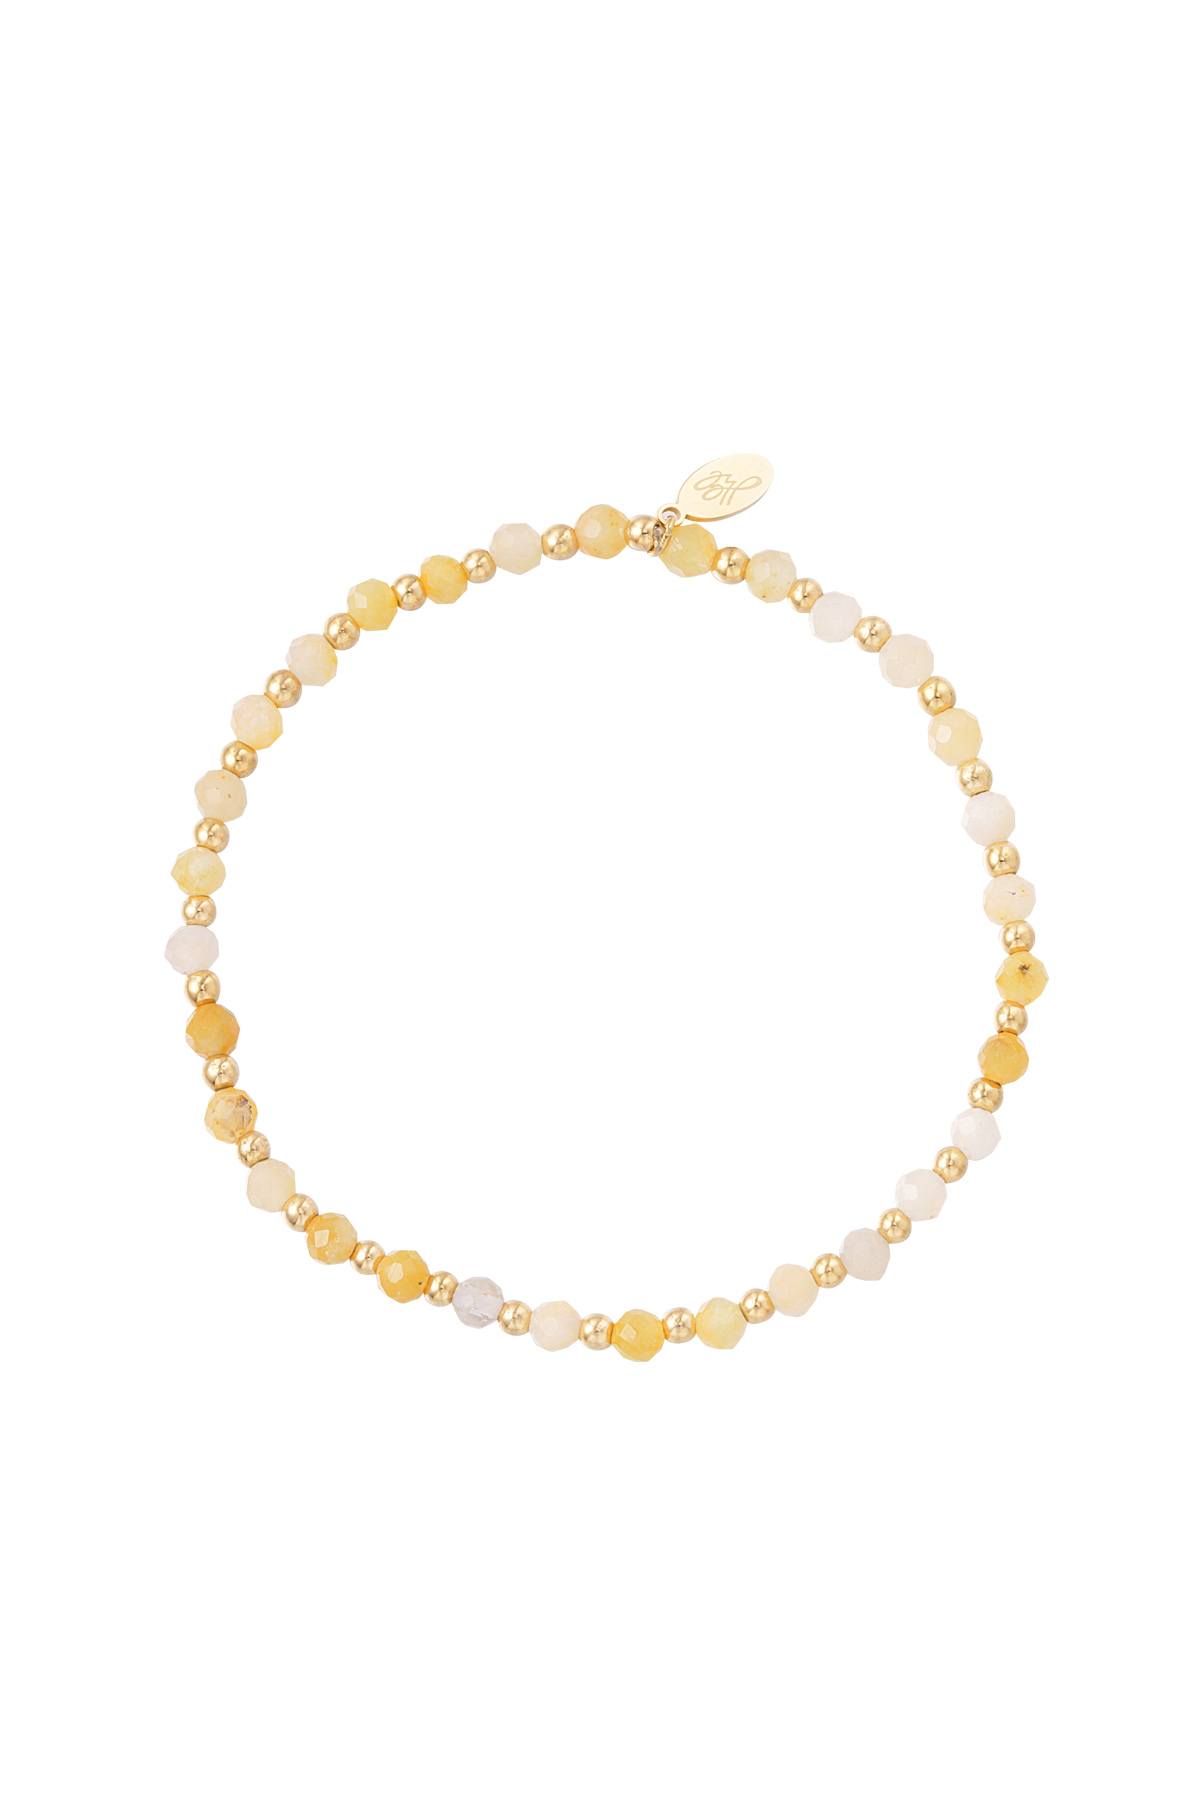 Beaded bracelet November - yellow/gold